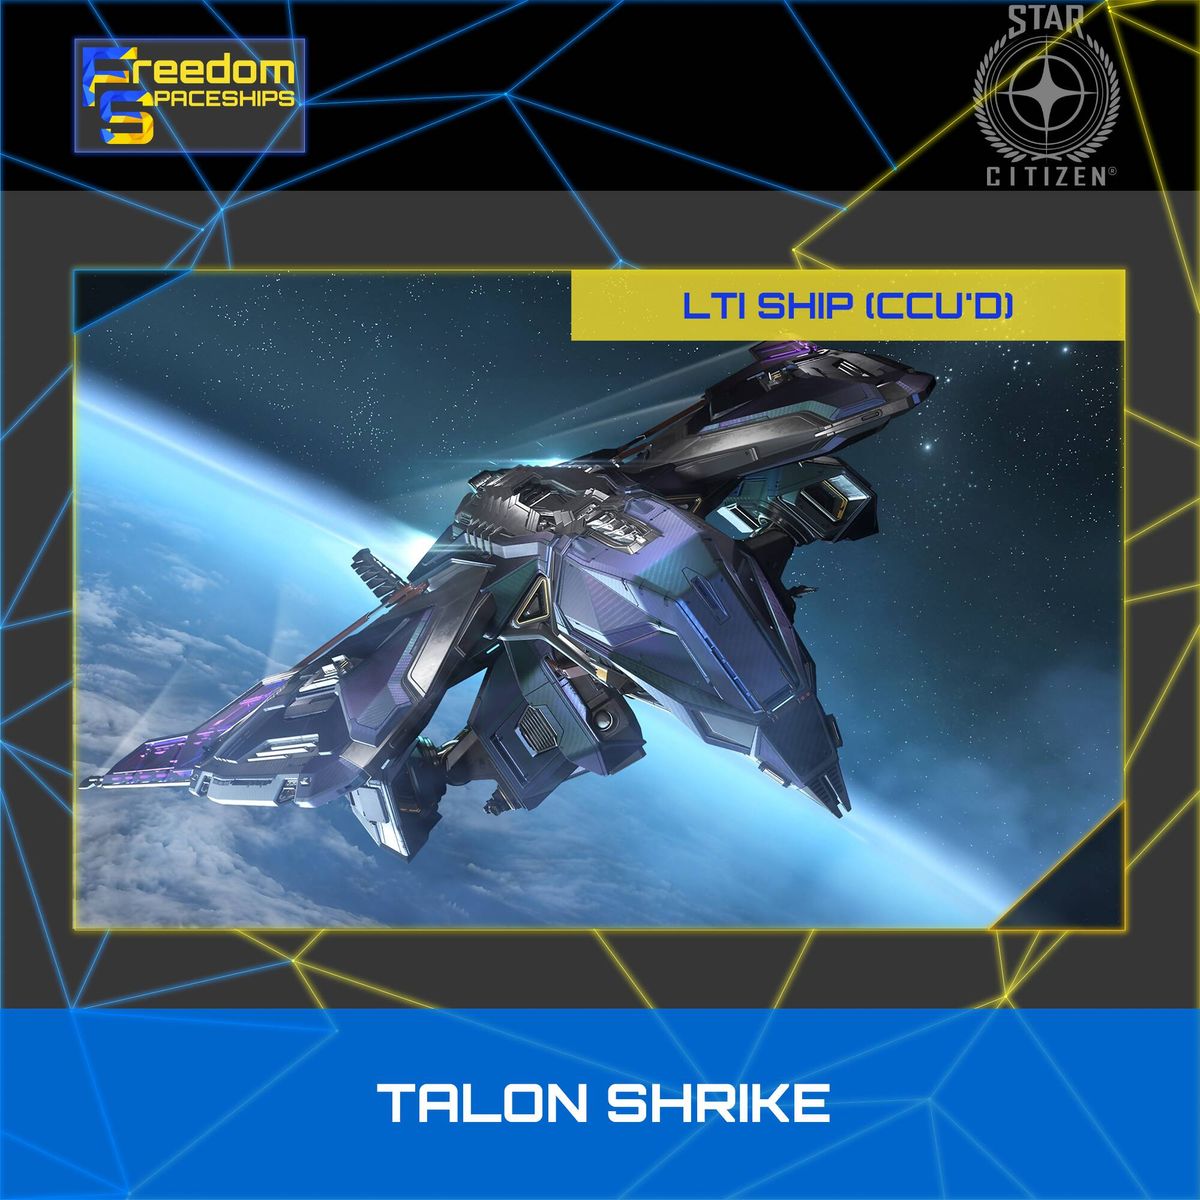 Esperia Talon Shrike - LTI